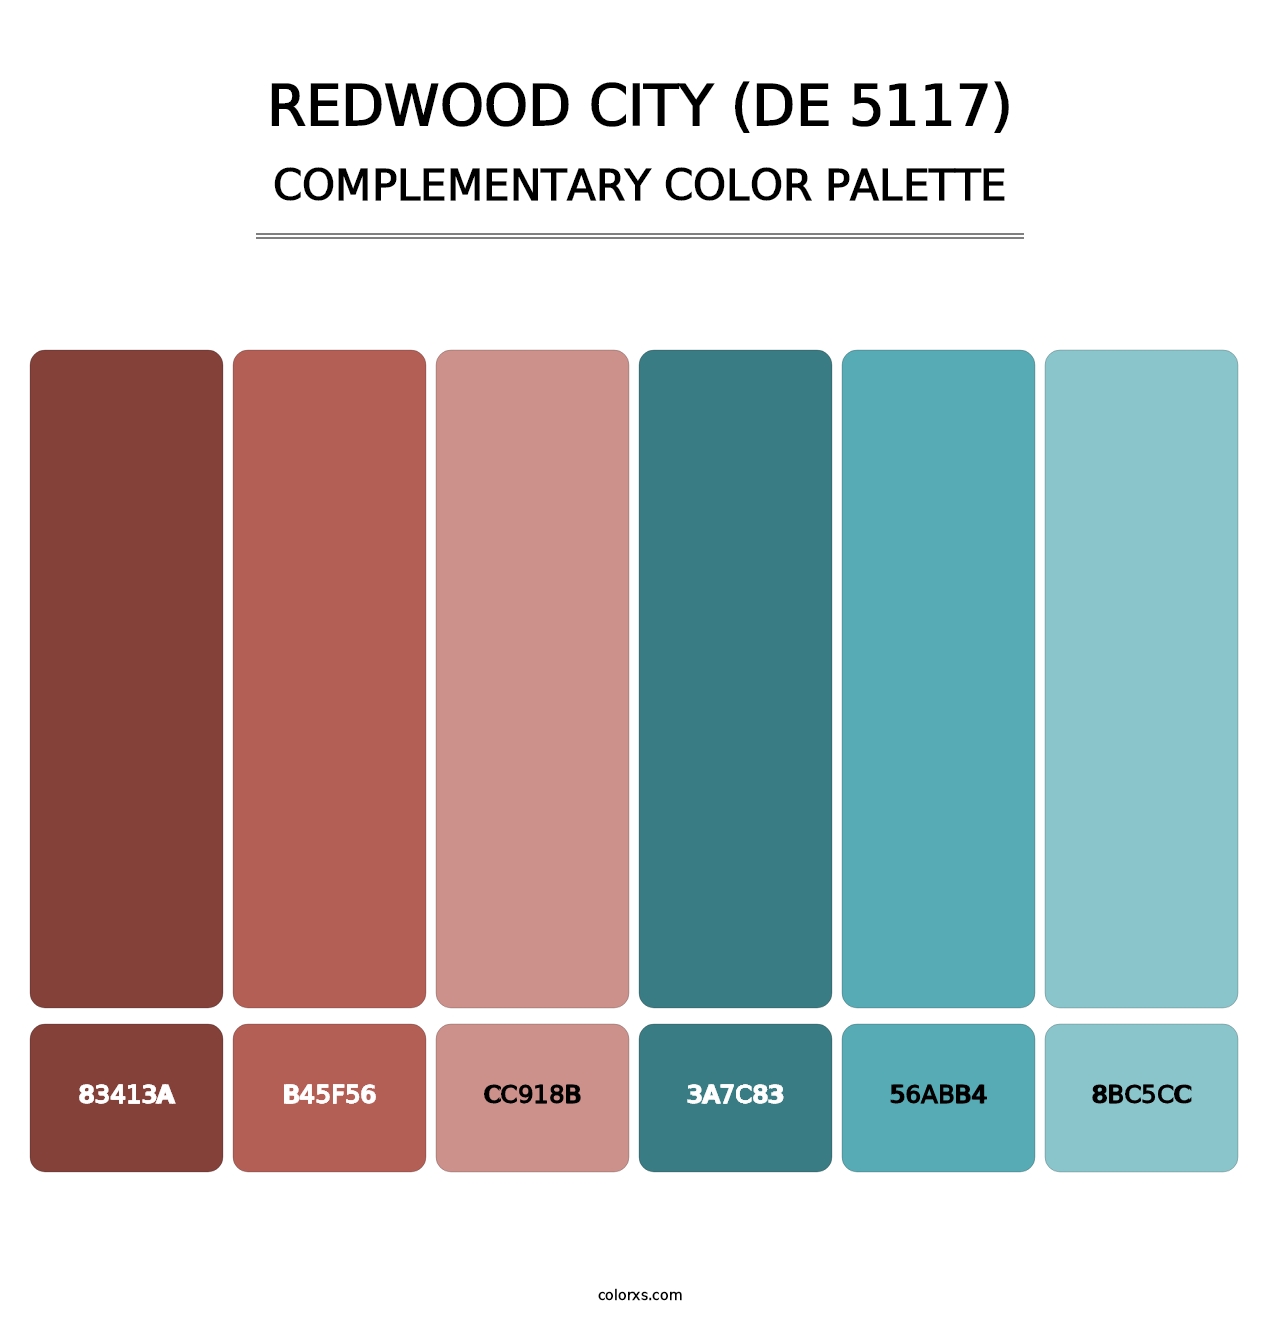 Redwood City (DE 5117) - Complementary Color Palette